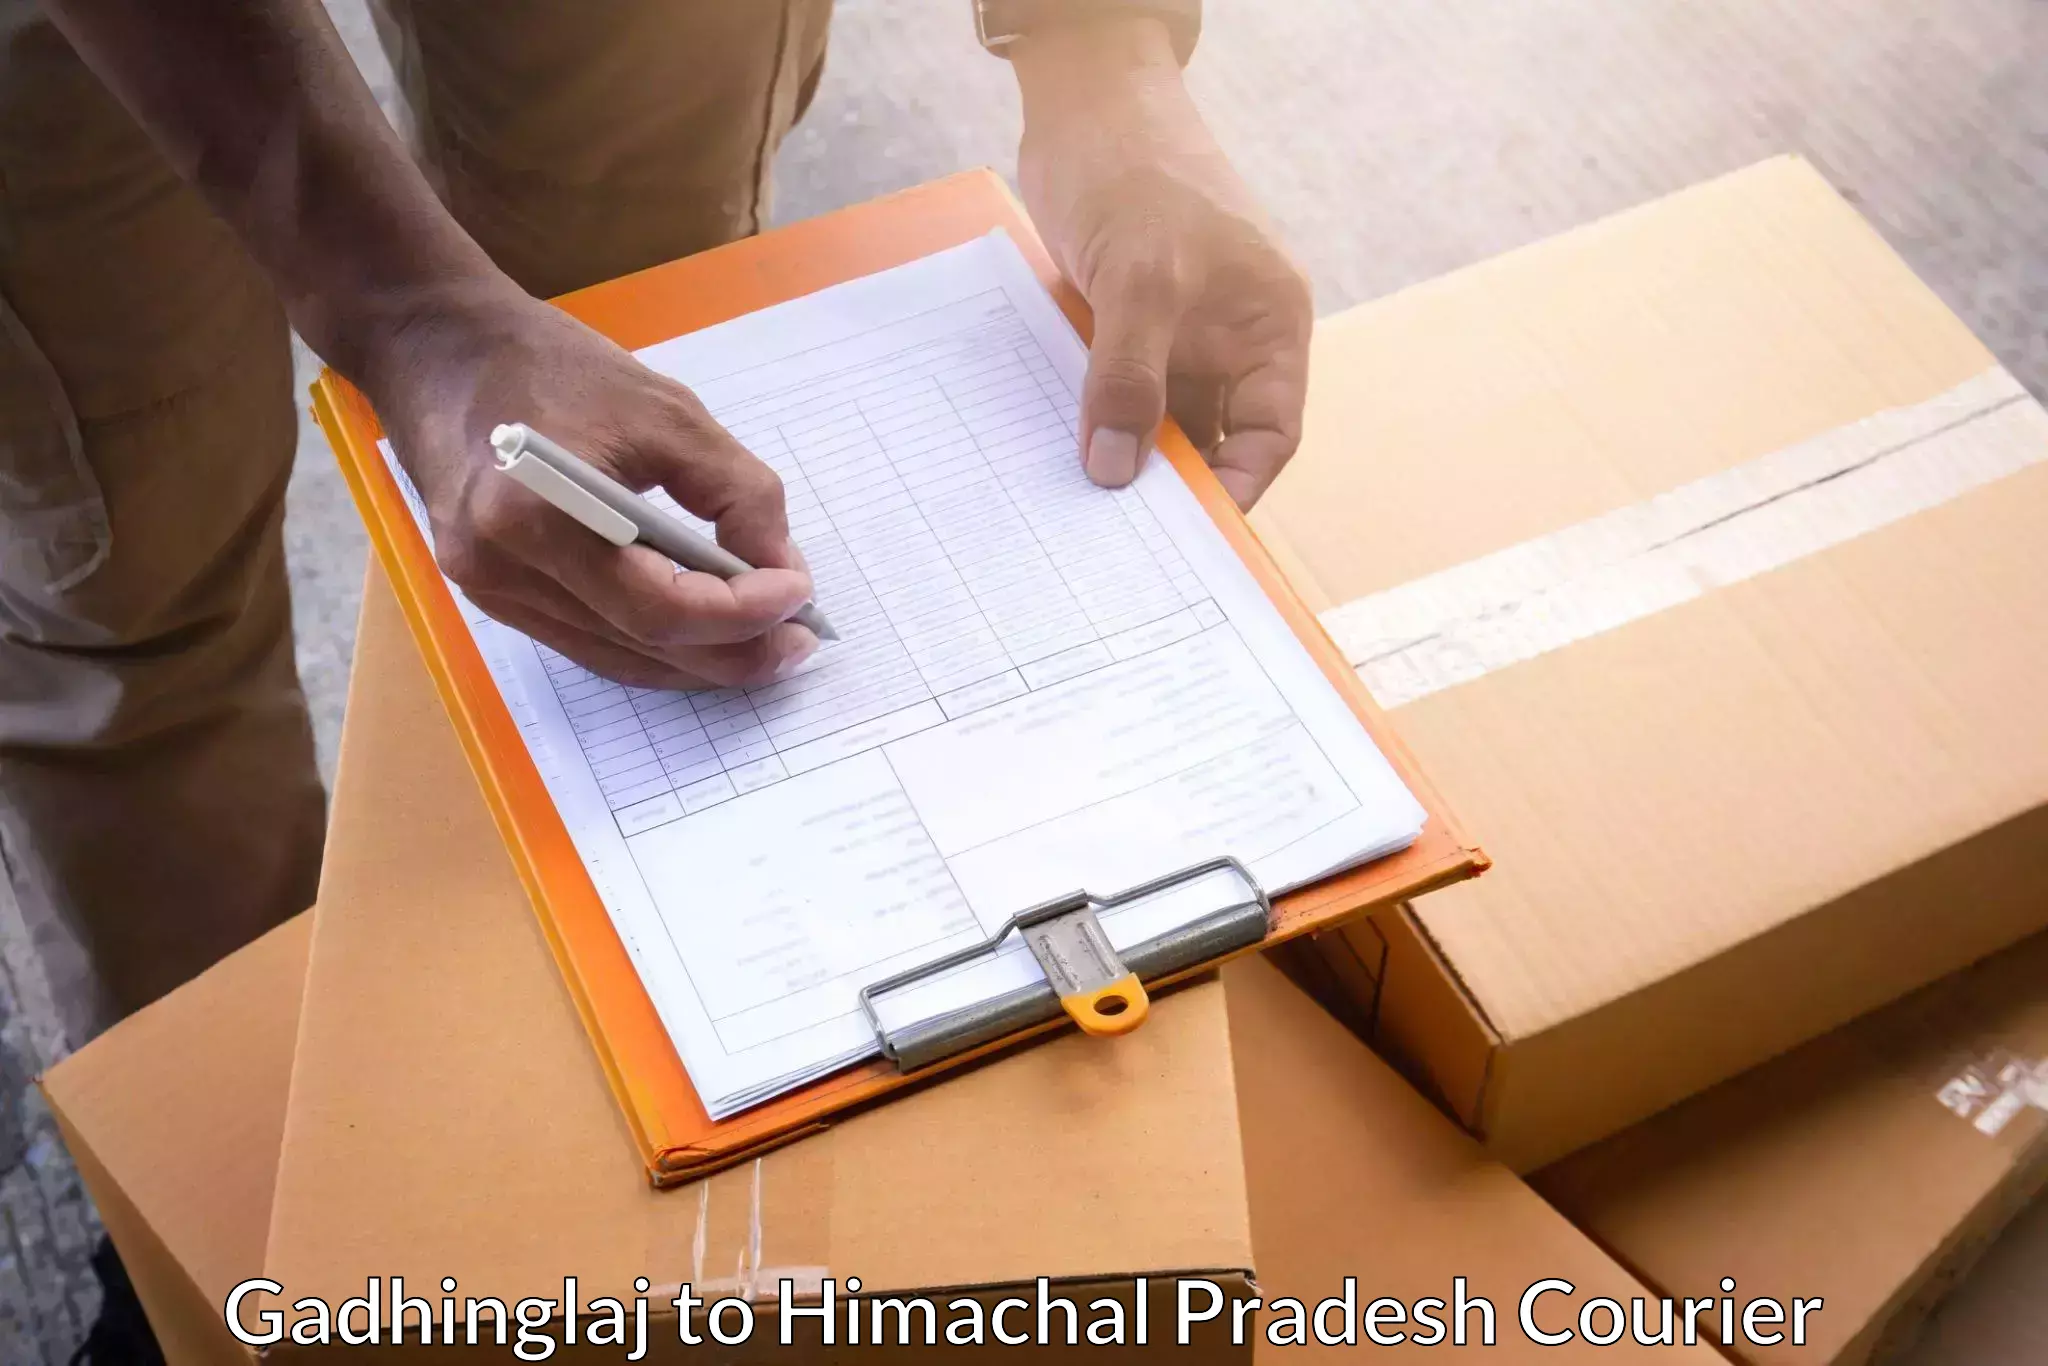 Specialized courier services Gadhinglaj to Shimla